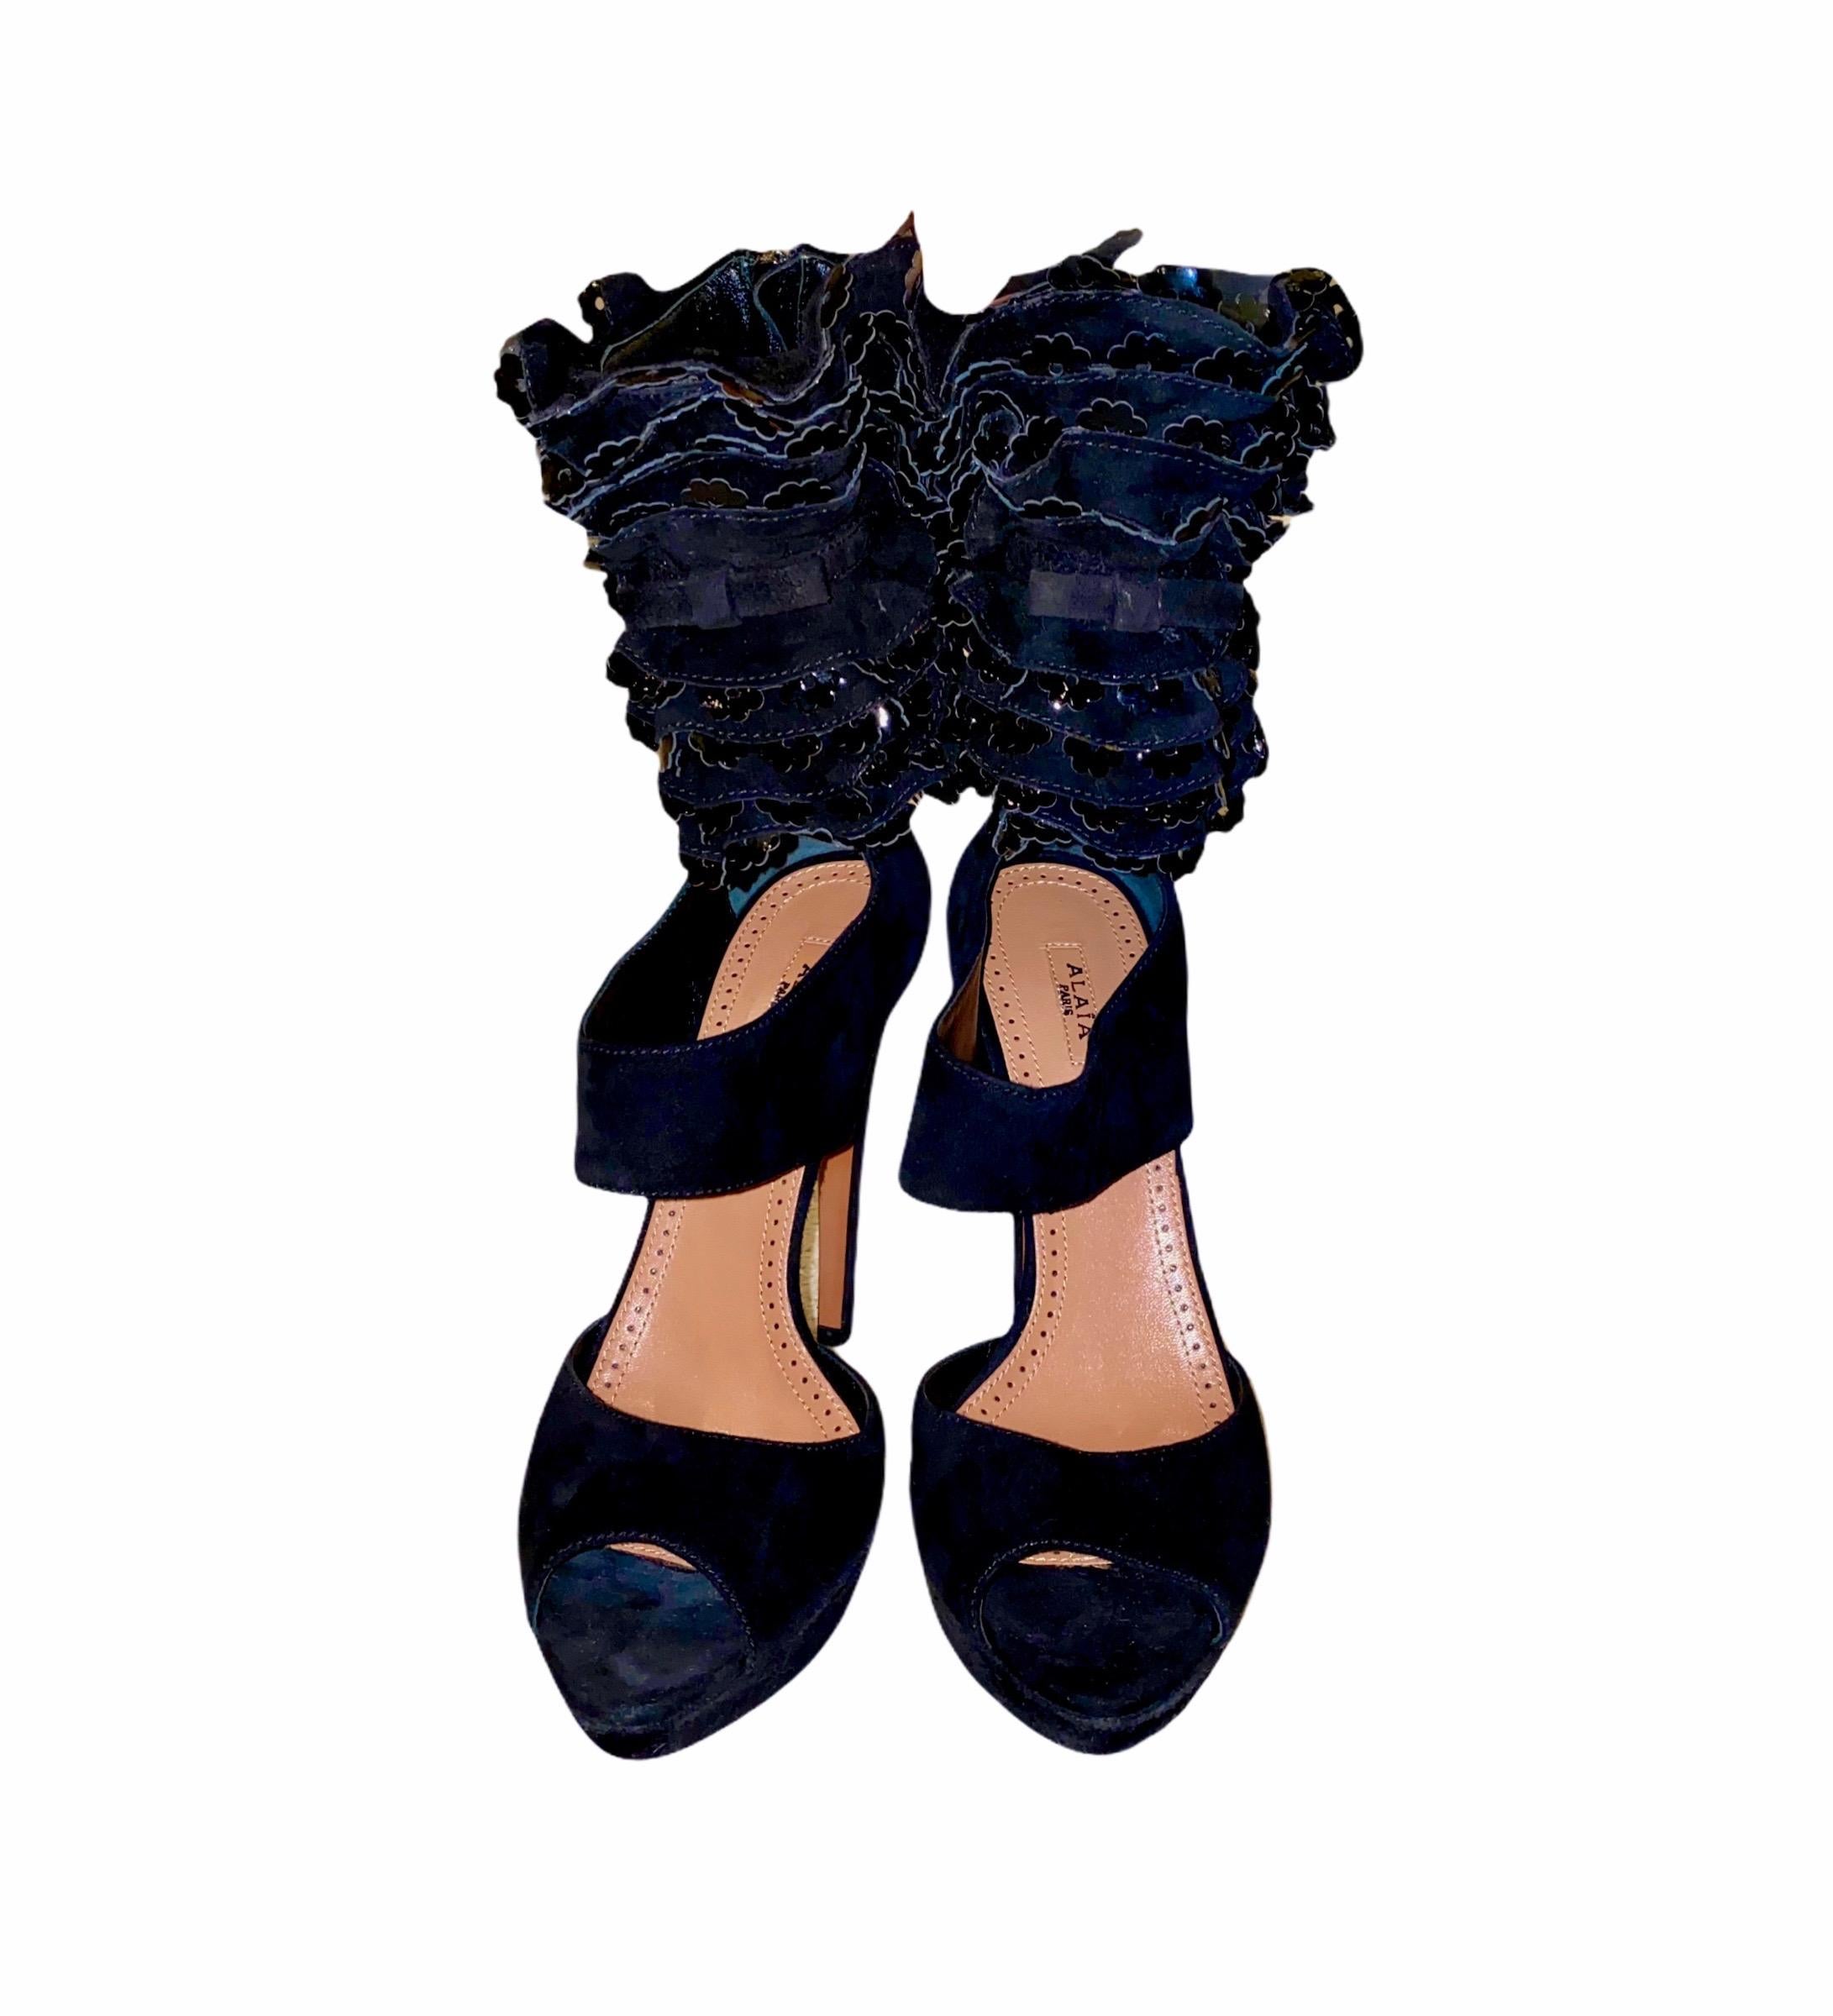 black ruffle heels